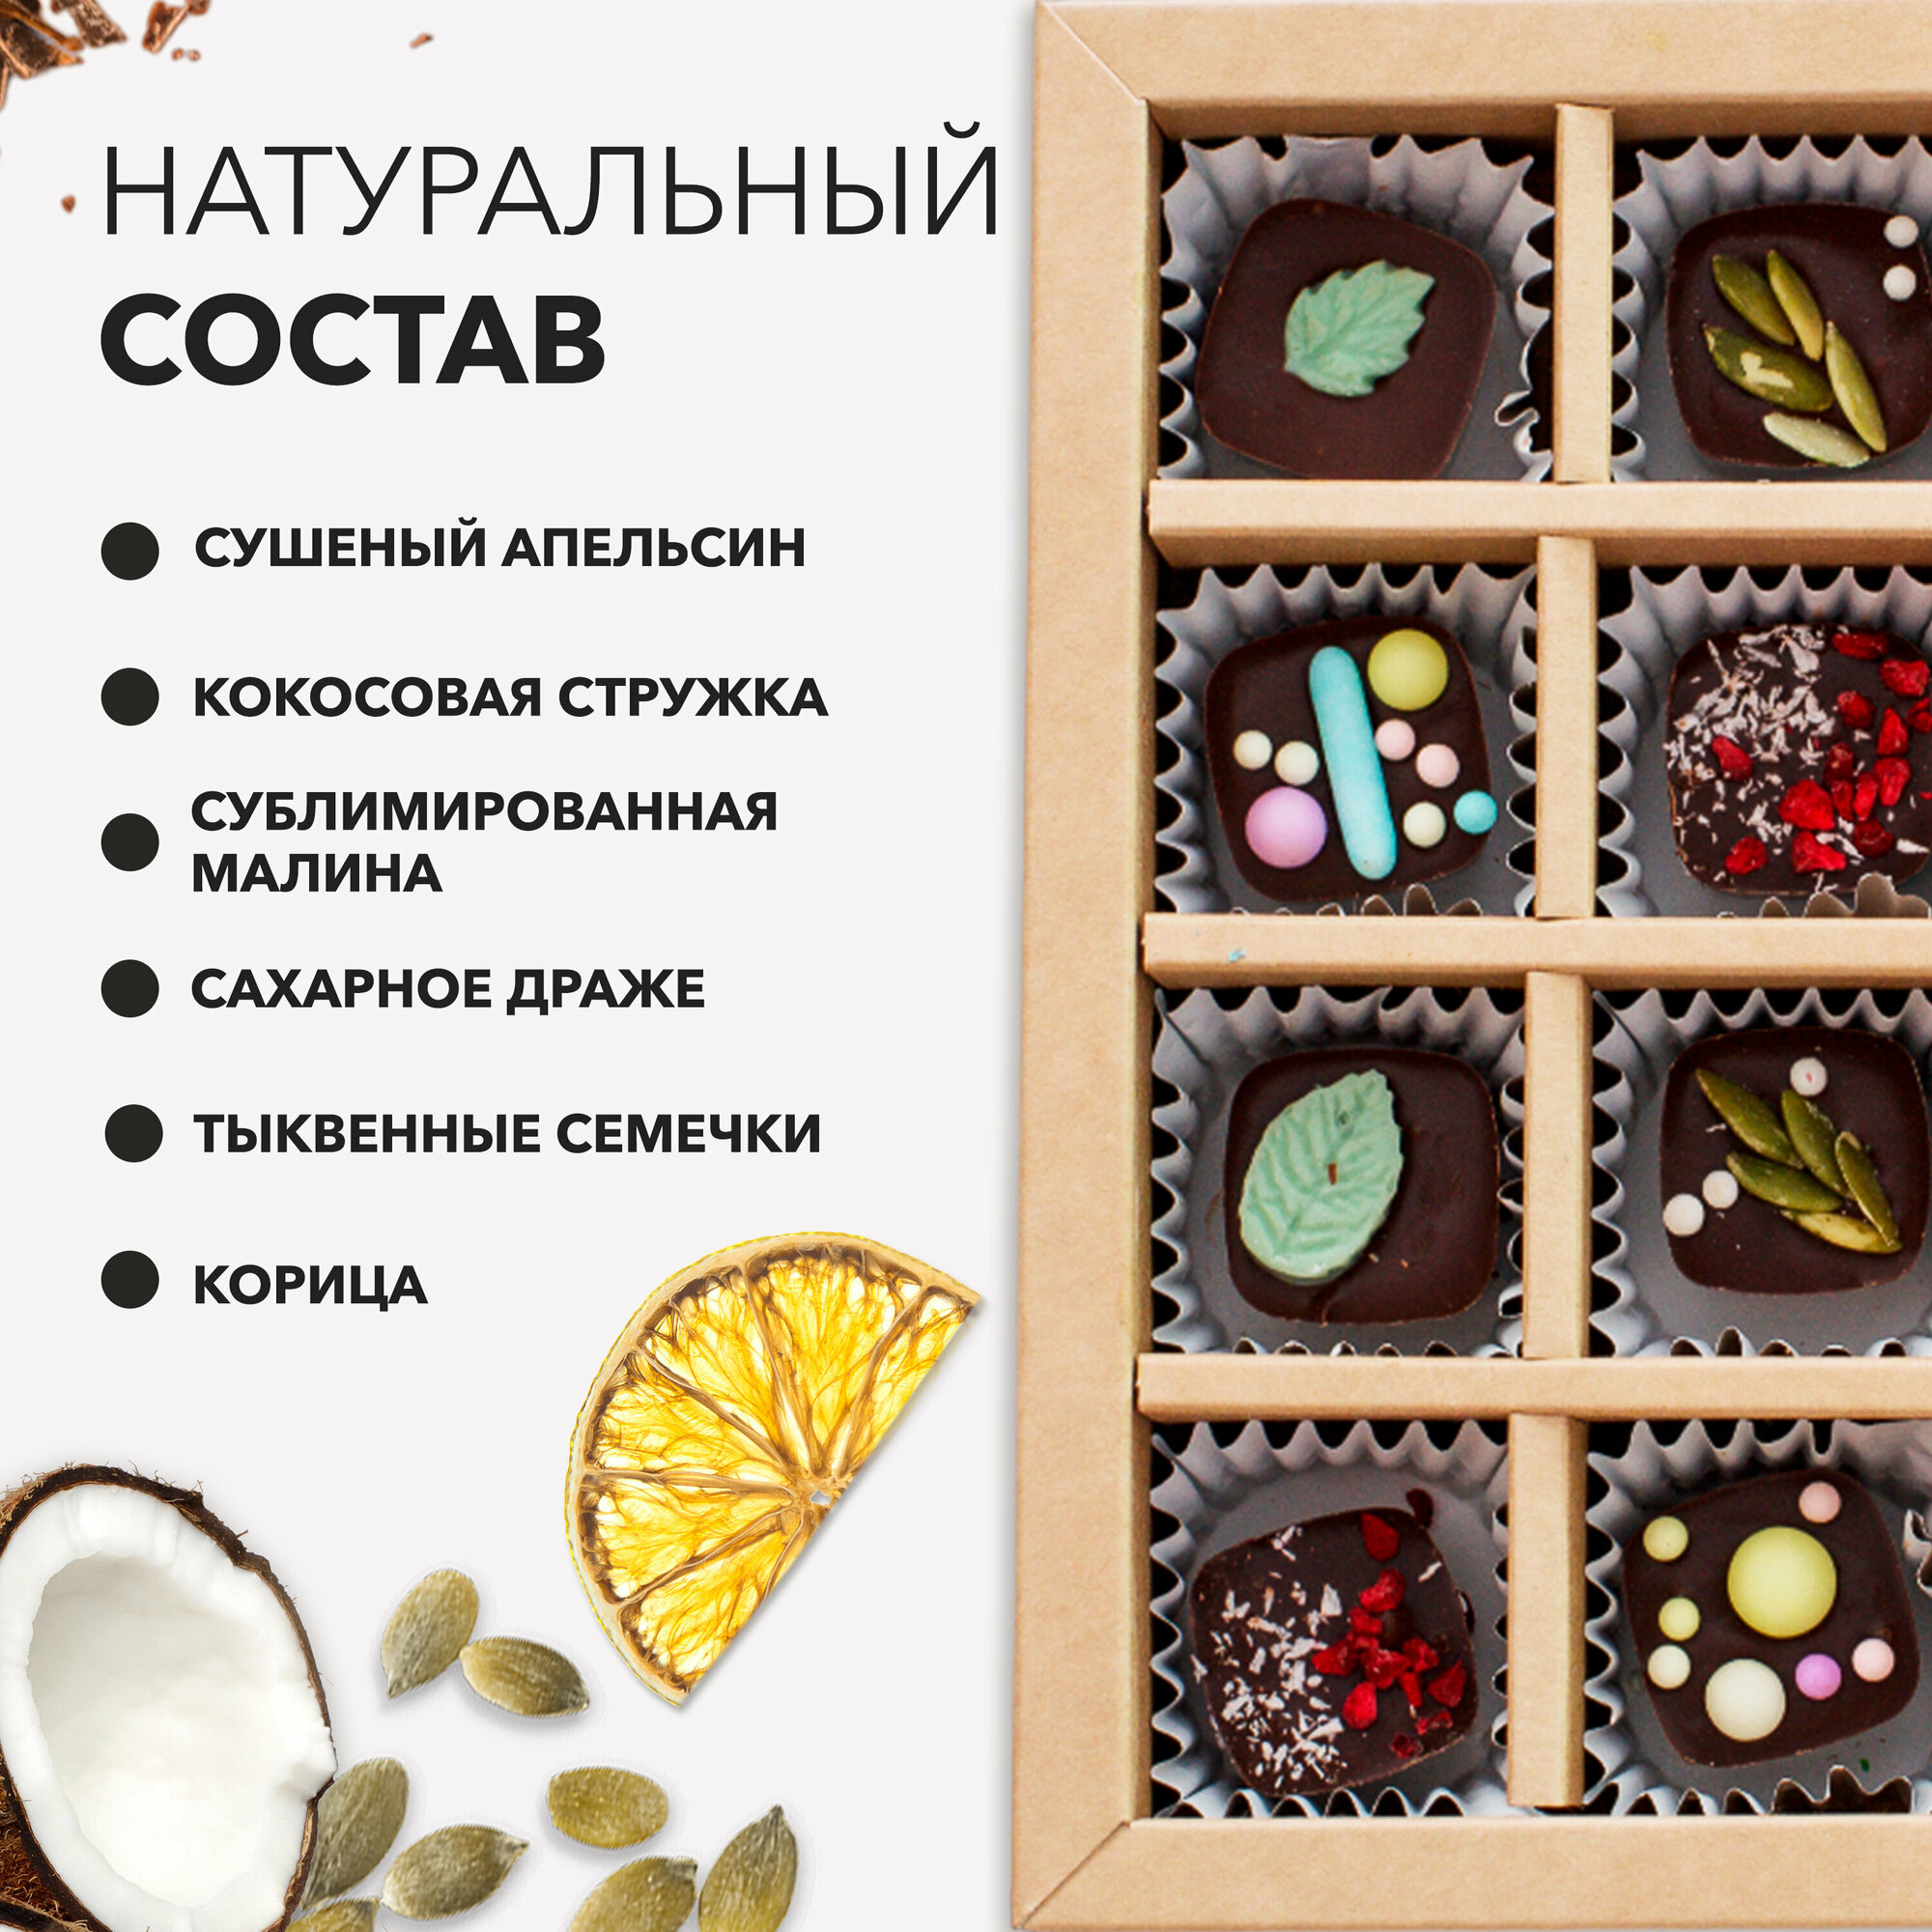 Шоколад с корицей ручной работы, Набор плитка и конфеты, 280 гр. - фотография № 4